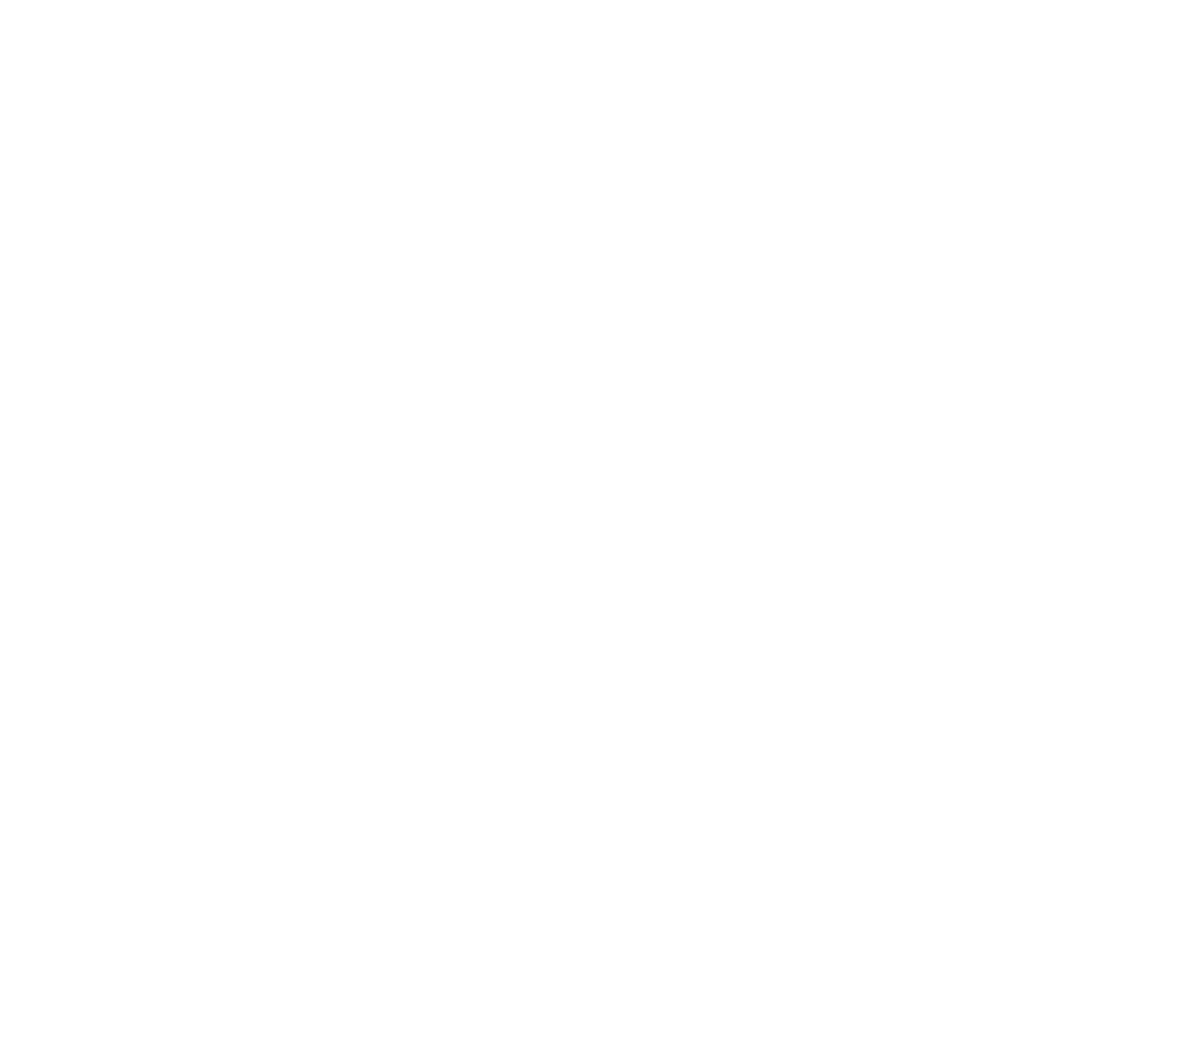 CBK logo